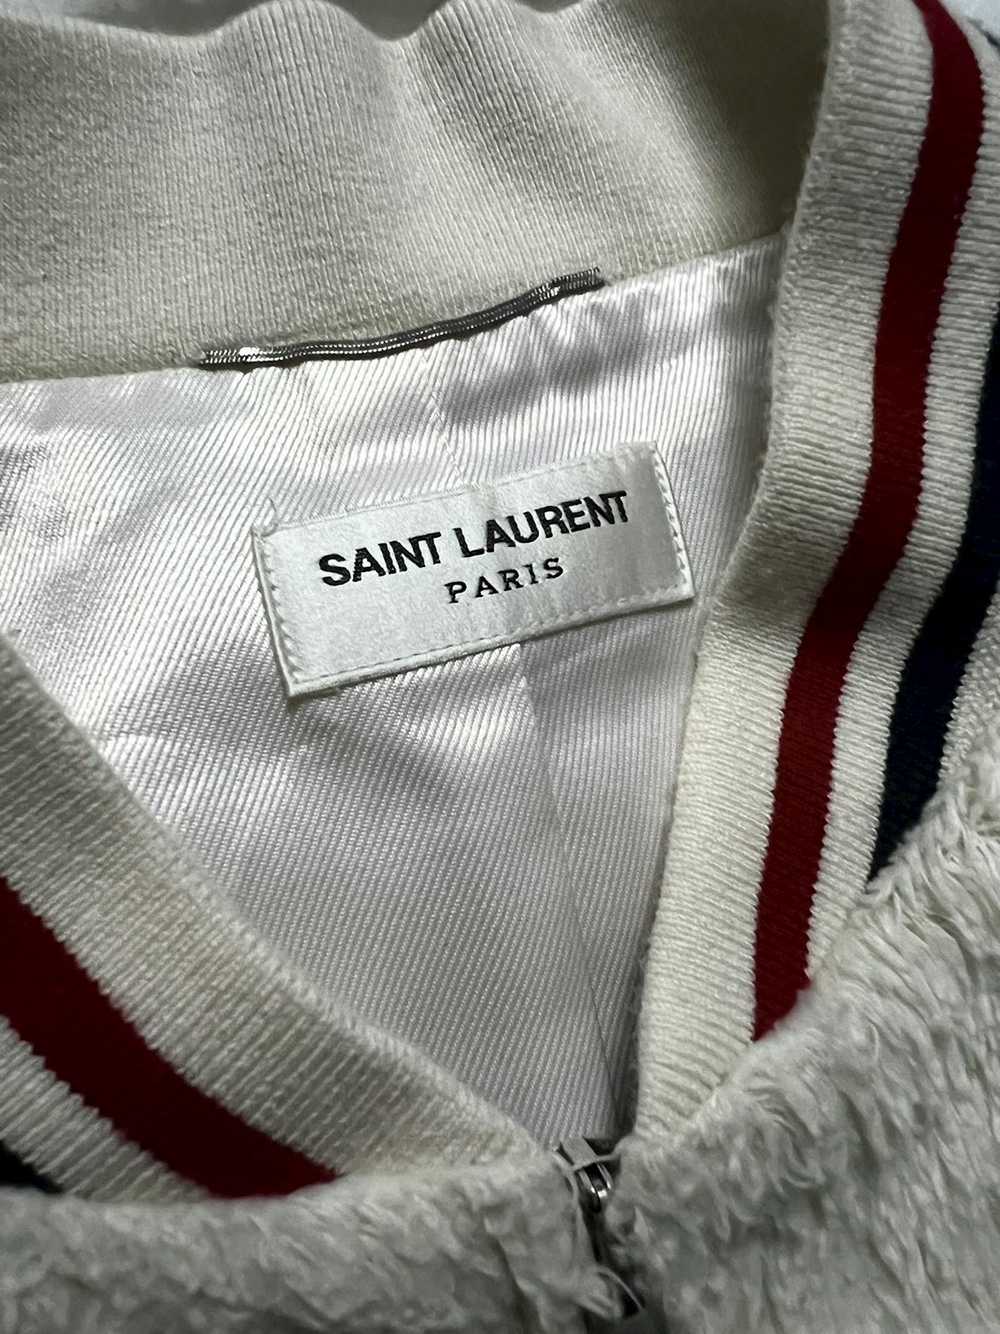 Saint Laurent Paris 2018 Faux Fur Teddy Jacket - image 2